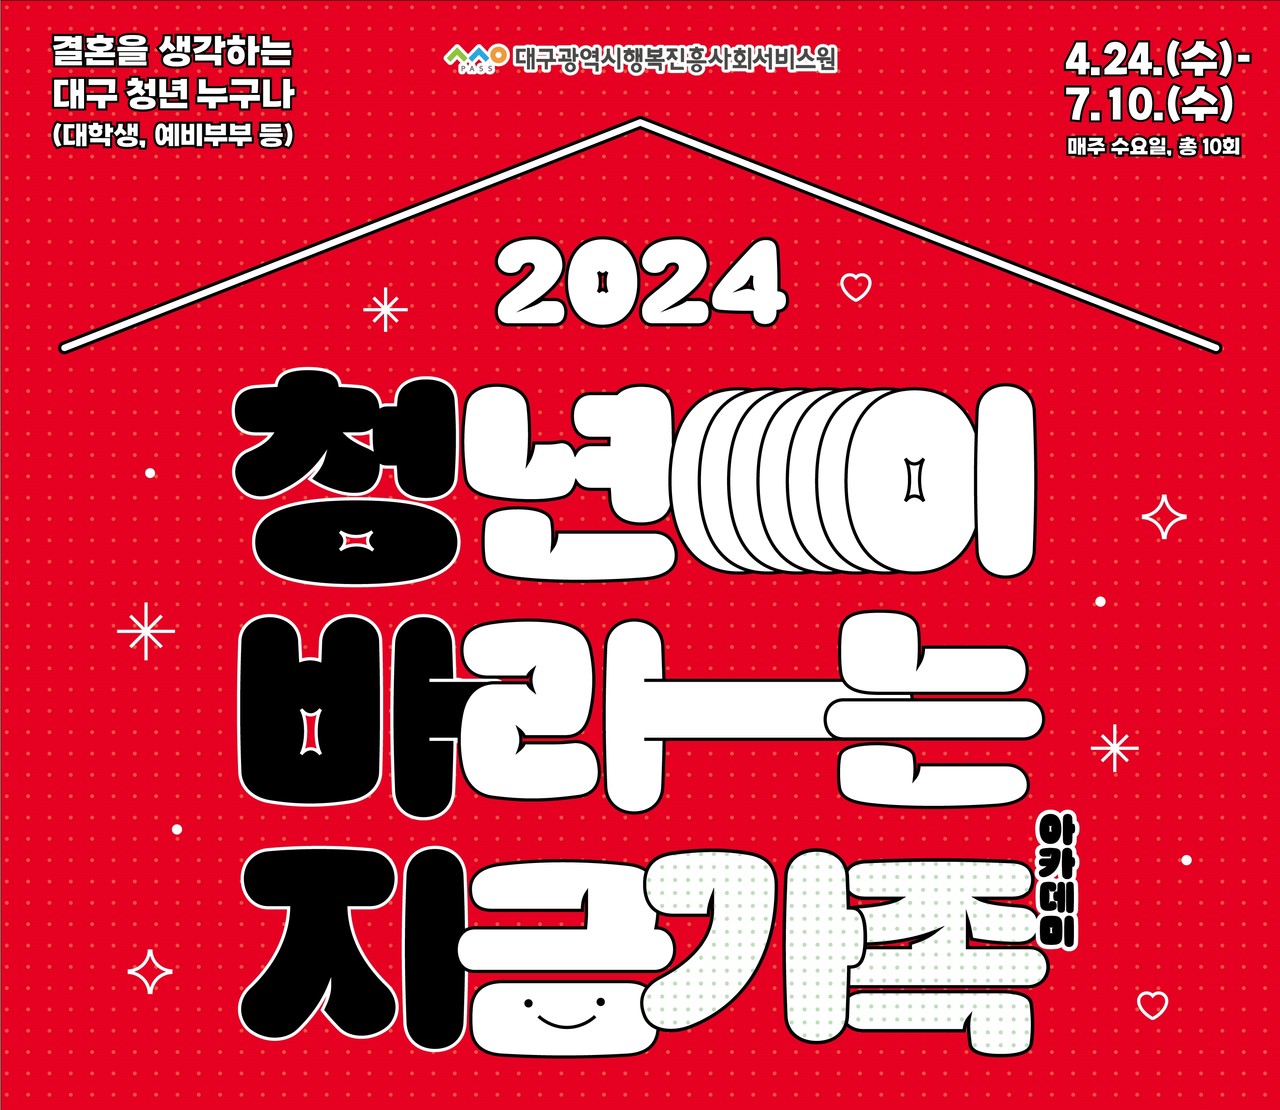 대구행복진흥원 ‘2024 청바지 아카데미’ 교육생 모집 포스터. (대구행복진흥원 제공)